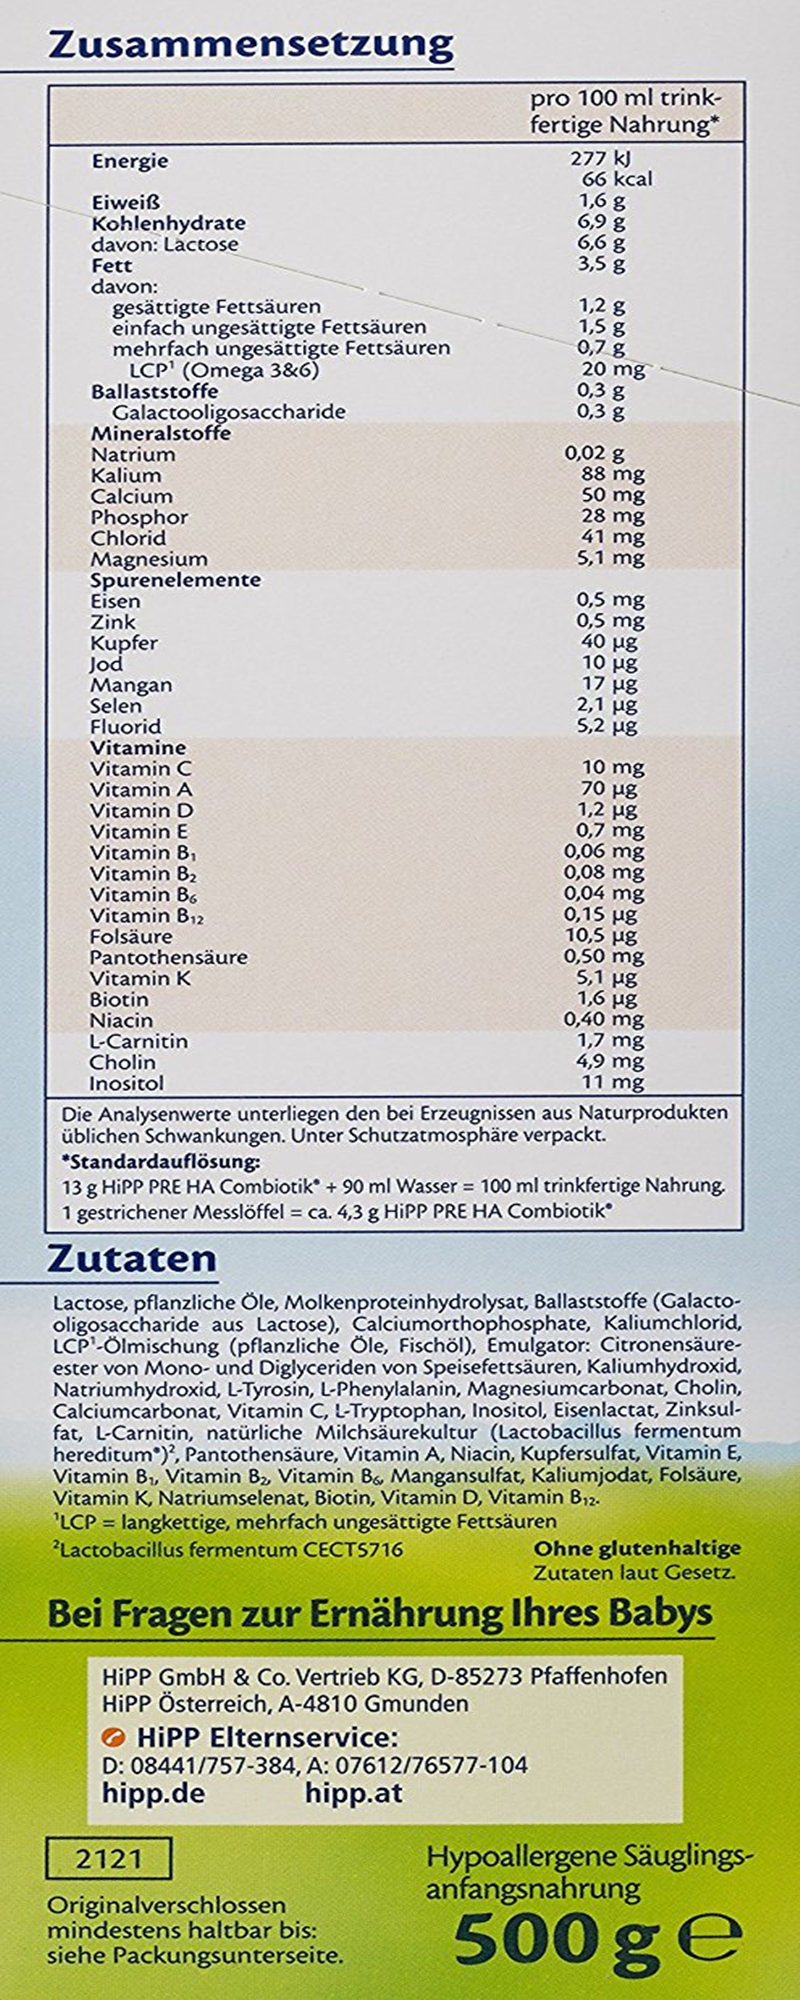 原装进口德国喜宝Hipp益生菌低敏免敏 HA特殊配方 Pre 段半水解婴幼儿奶粉适合3-6月;0-3月个月宝宝